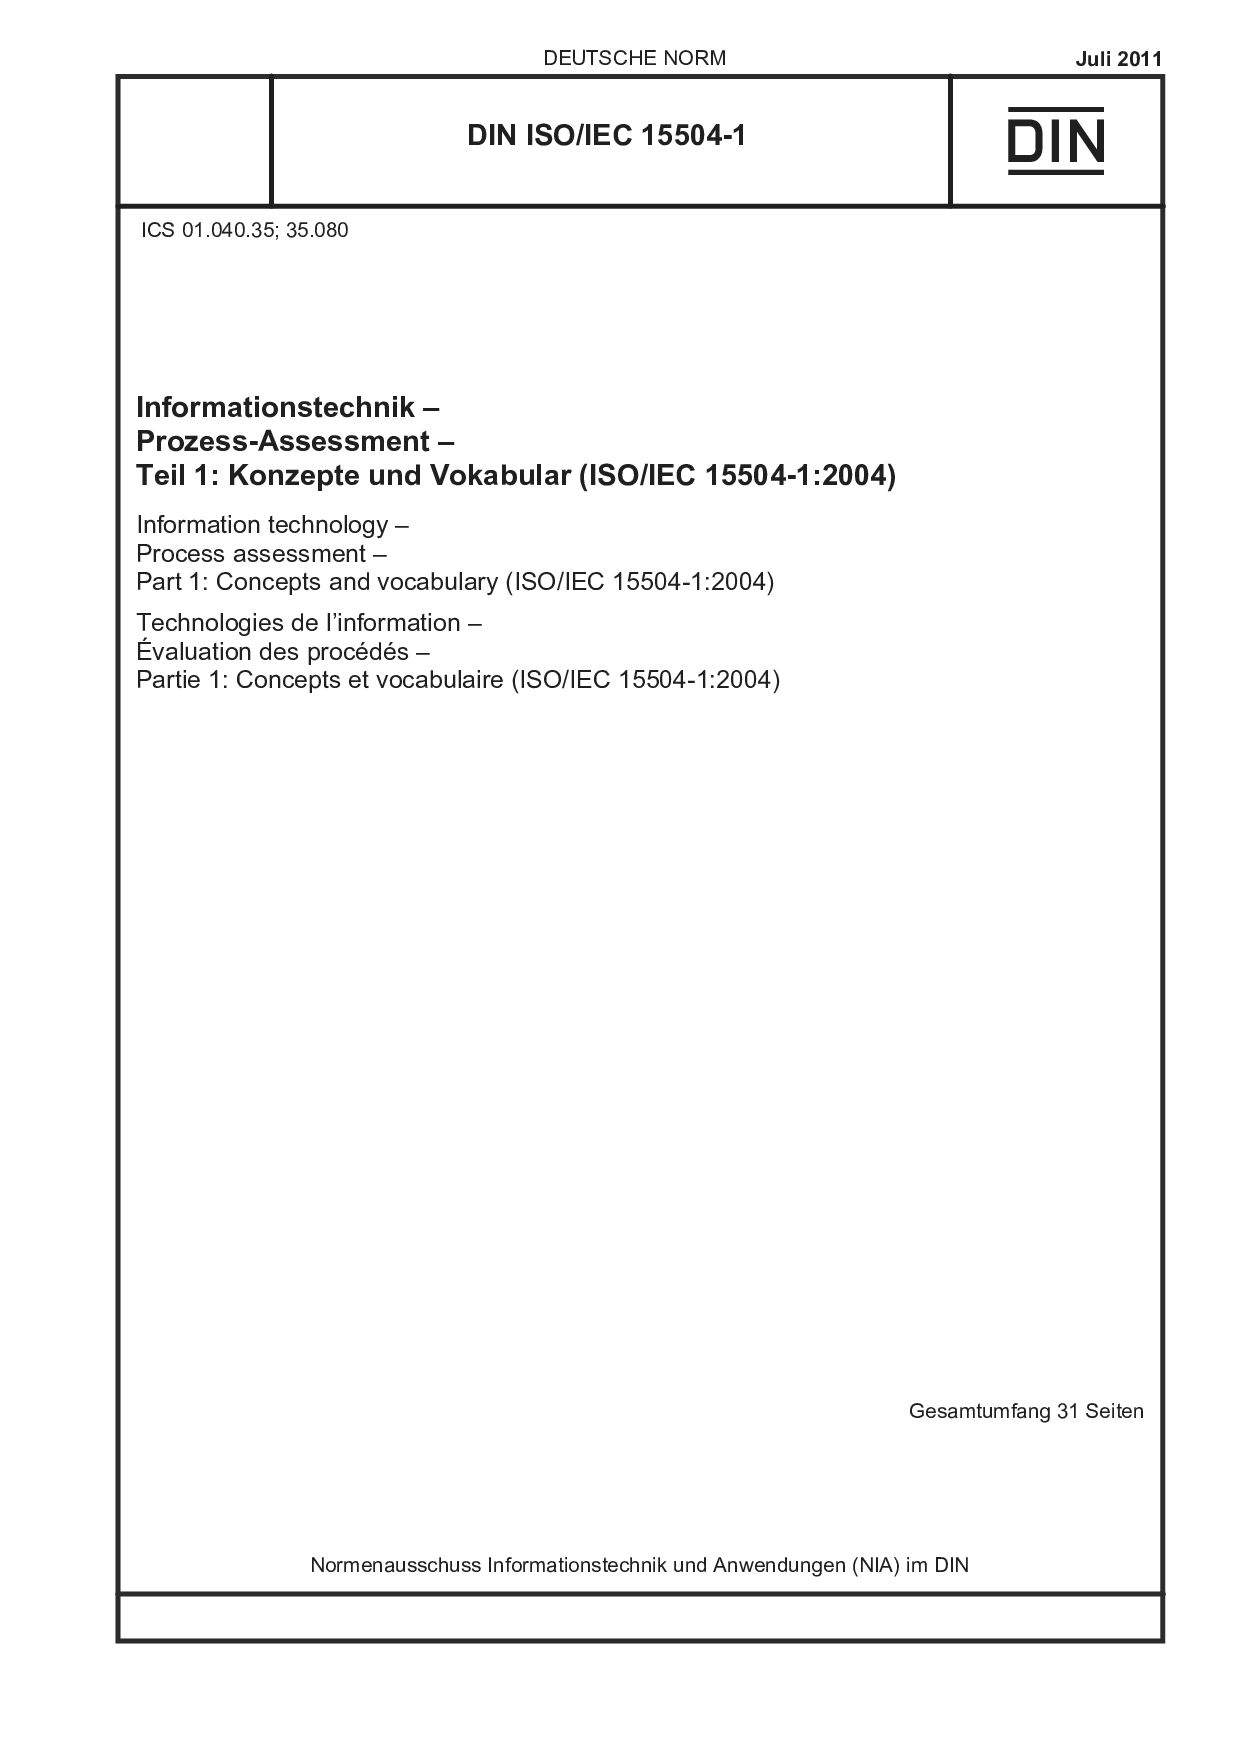 DIN ISO/IEC 15504-1:2011封面图